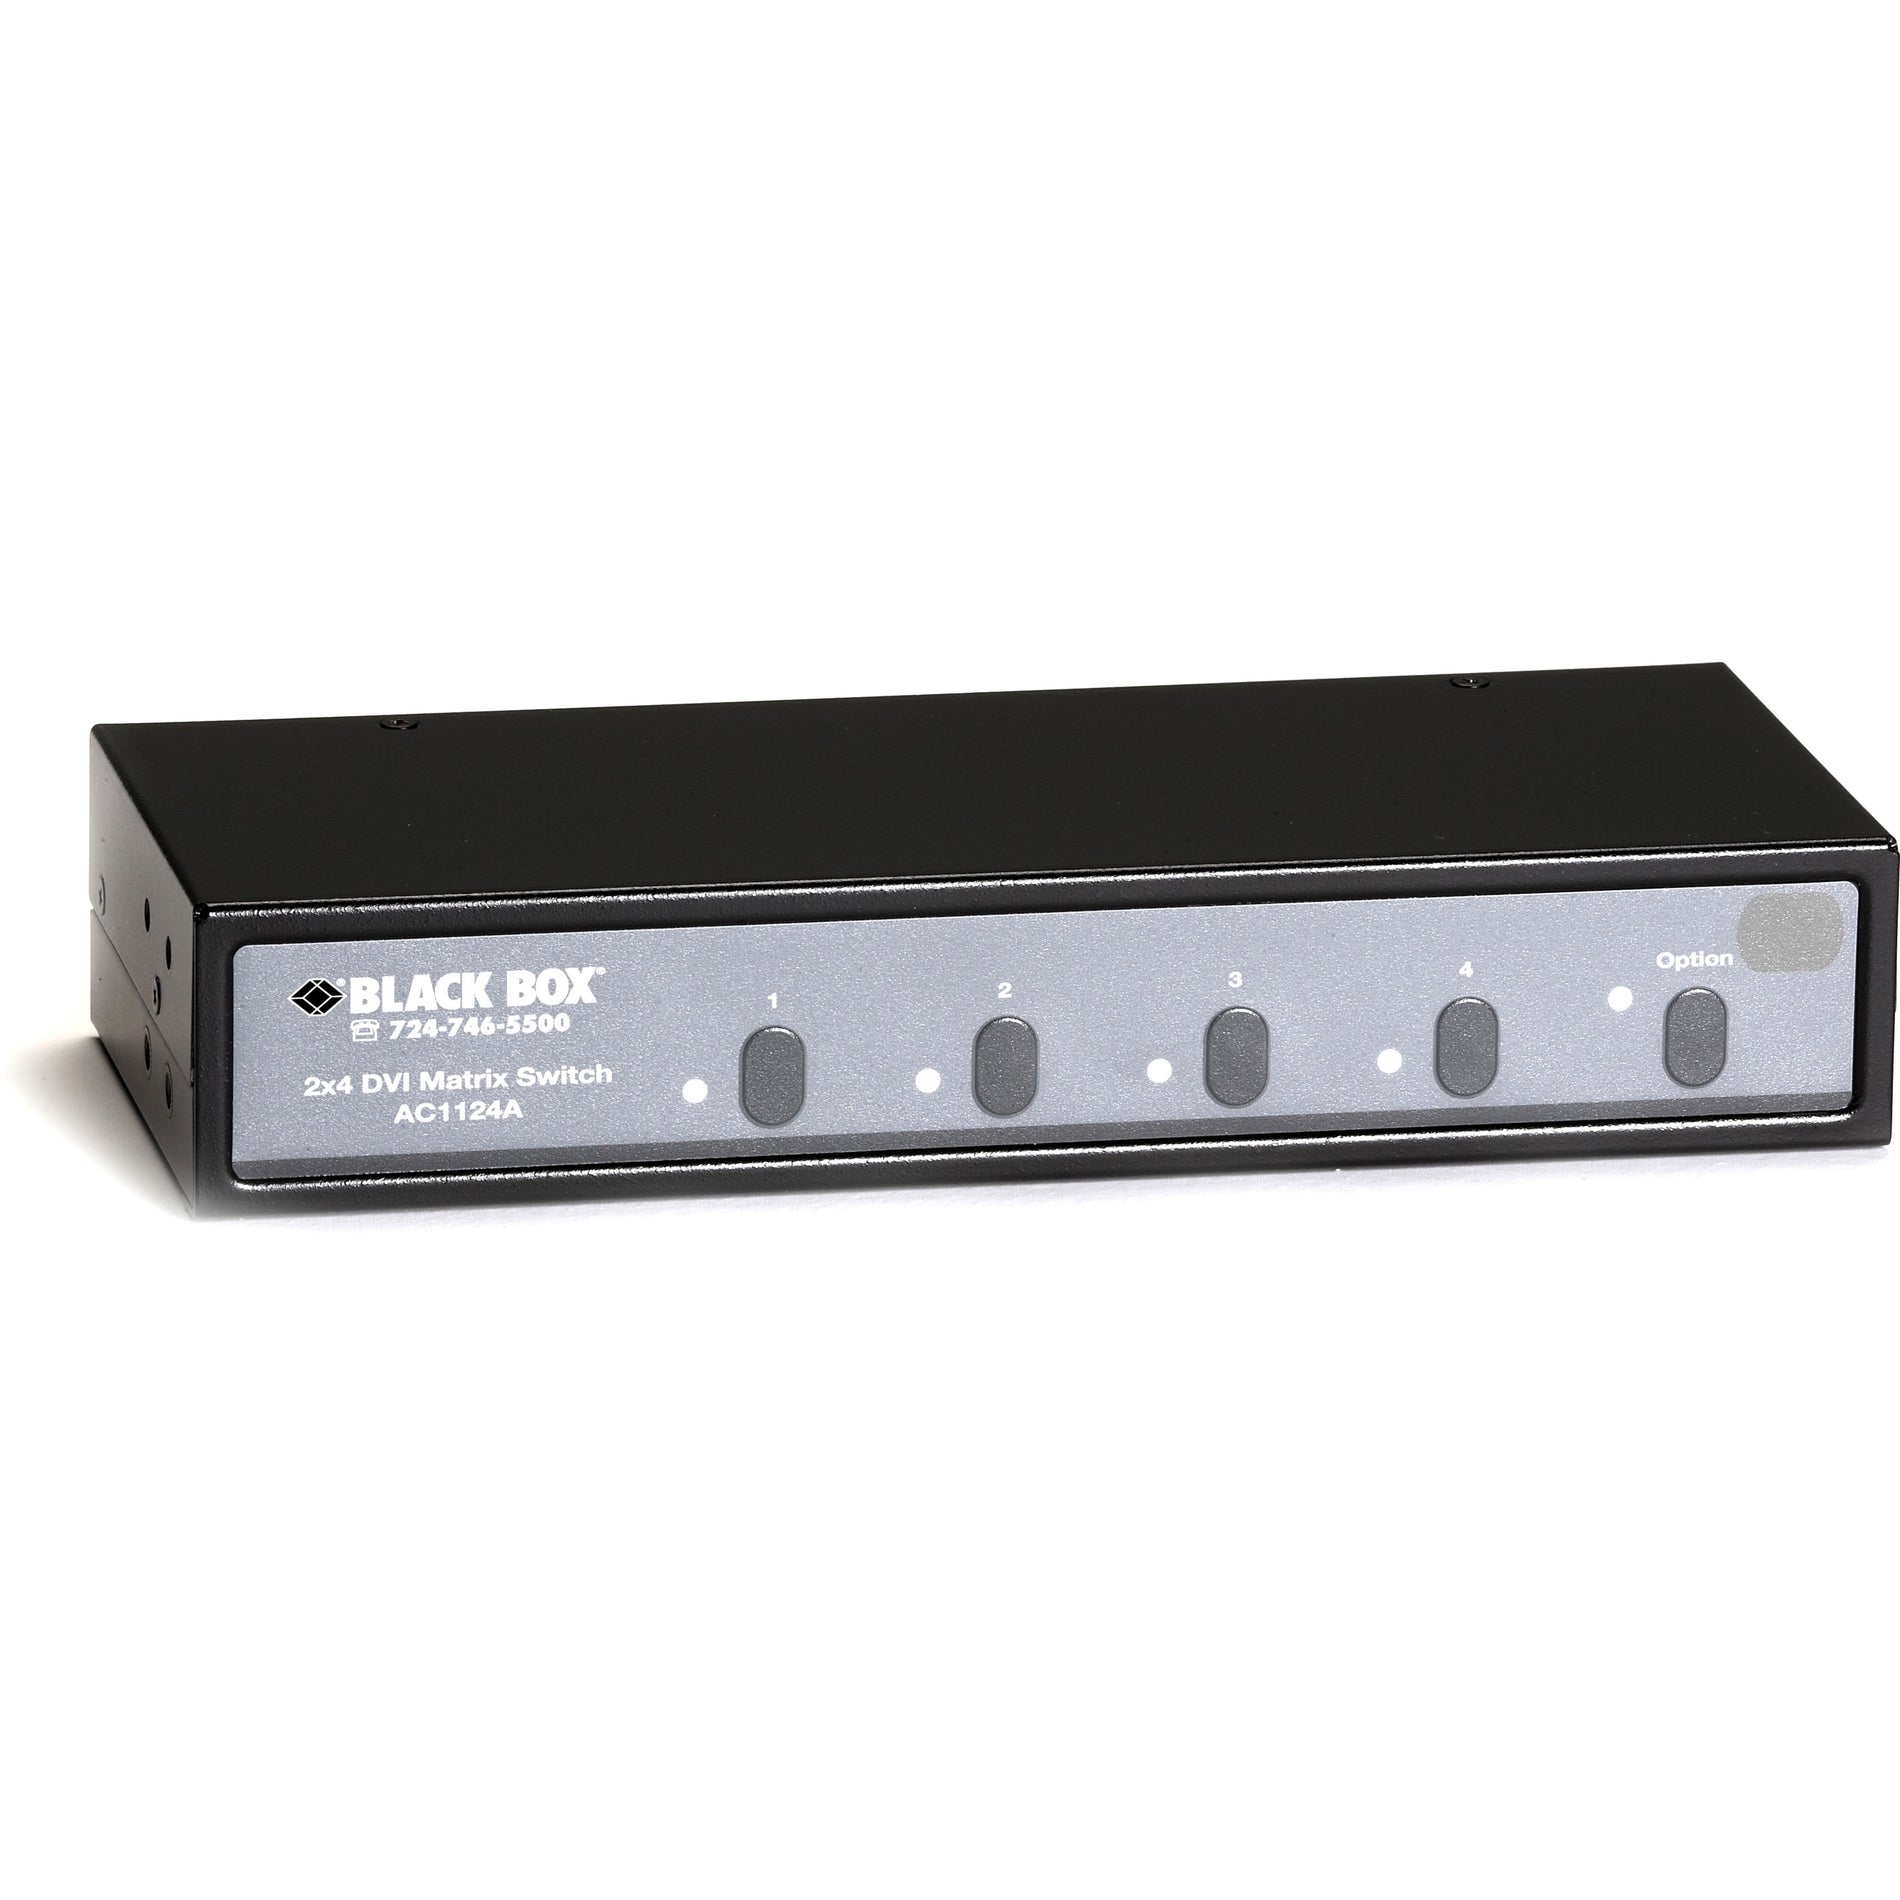 Black Box AC1124A 2x4 DVI Matrix Switch With Audio, UXGA, 1600 x 1200, 3 Year Warranty